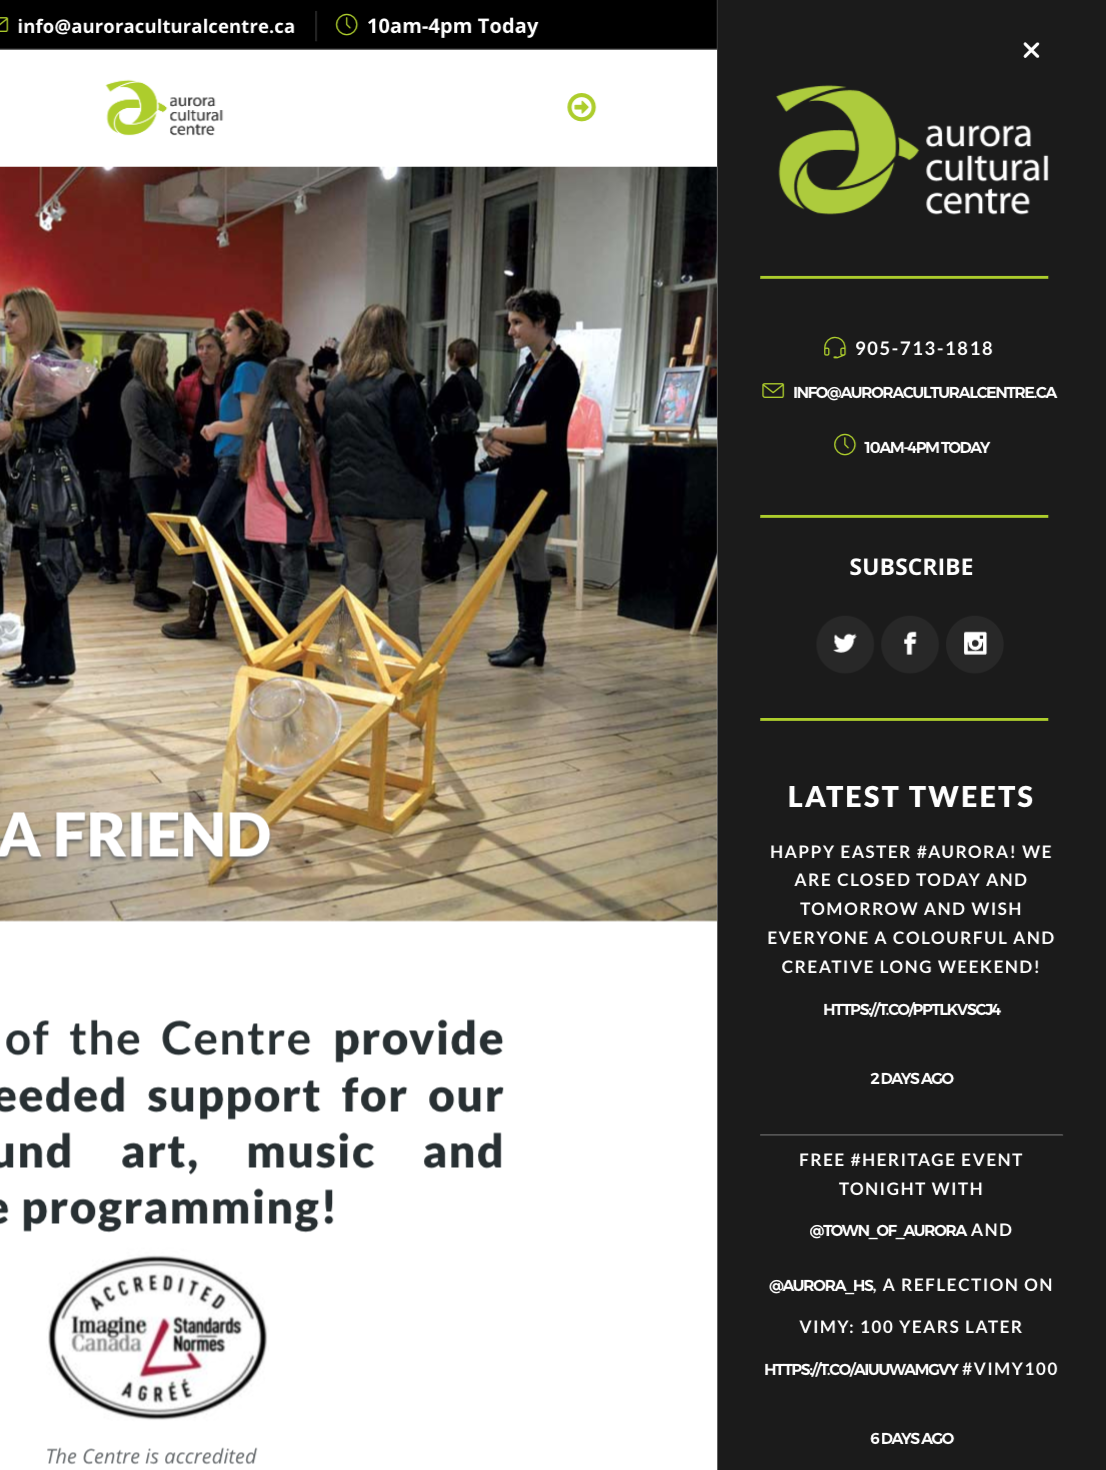 Aurora Cultural Centre Website Sidebar on Tablet